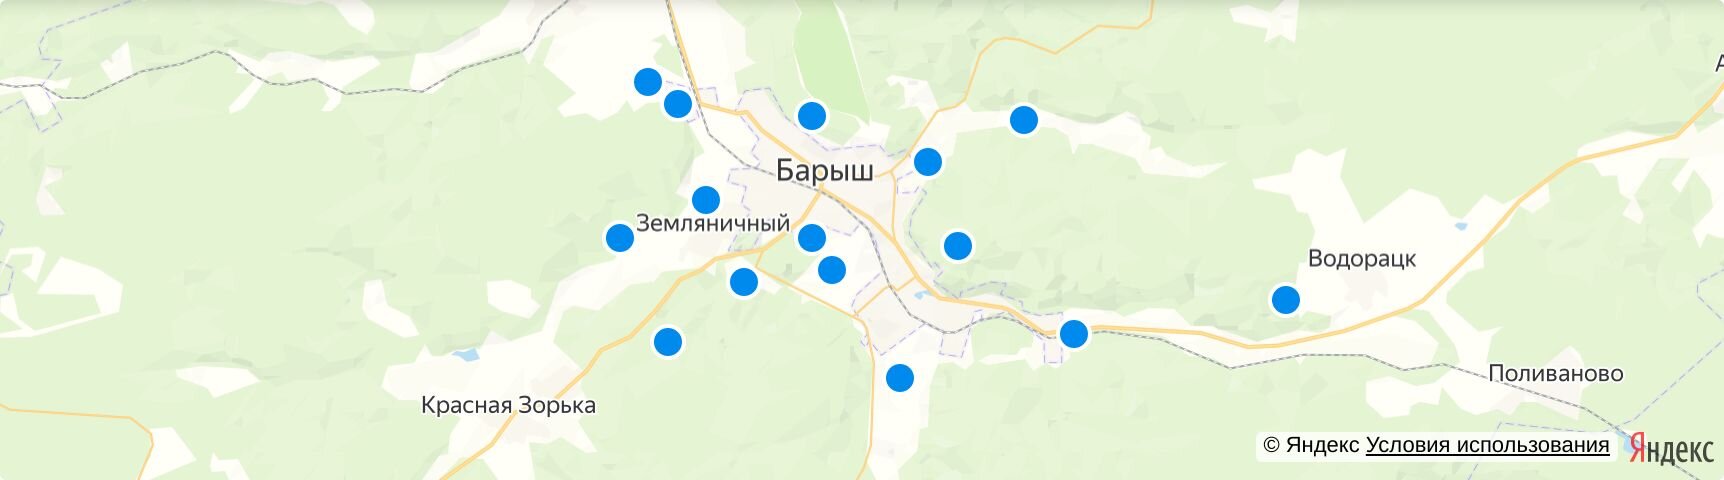 Барыш на карте. Барыш Ульяновская область на карте. Г. Барыш карта с улицами и домами.